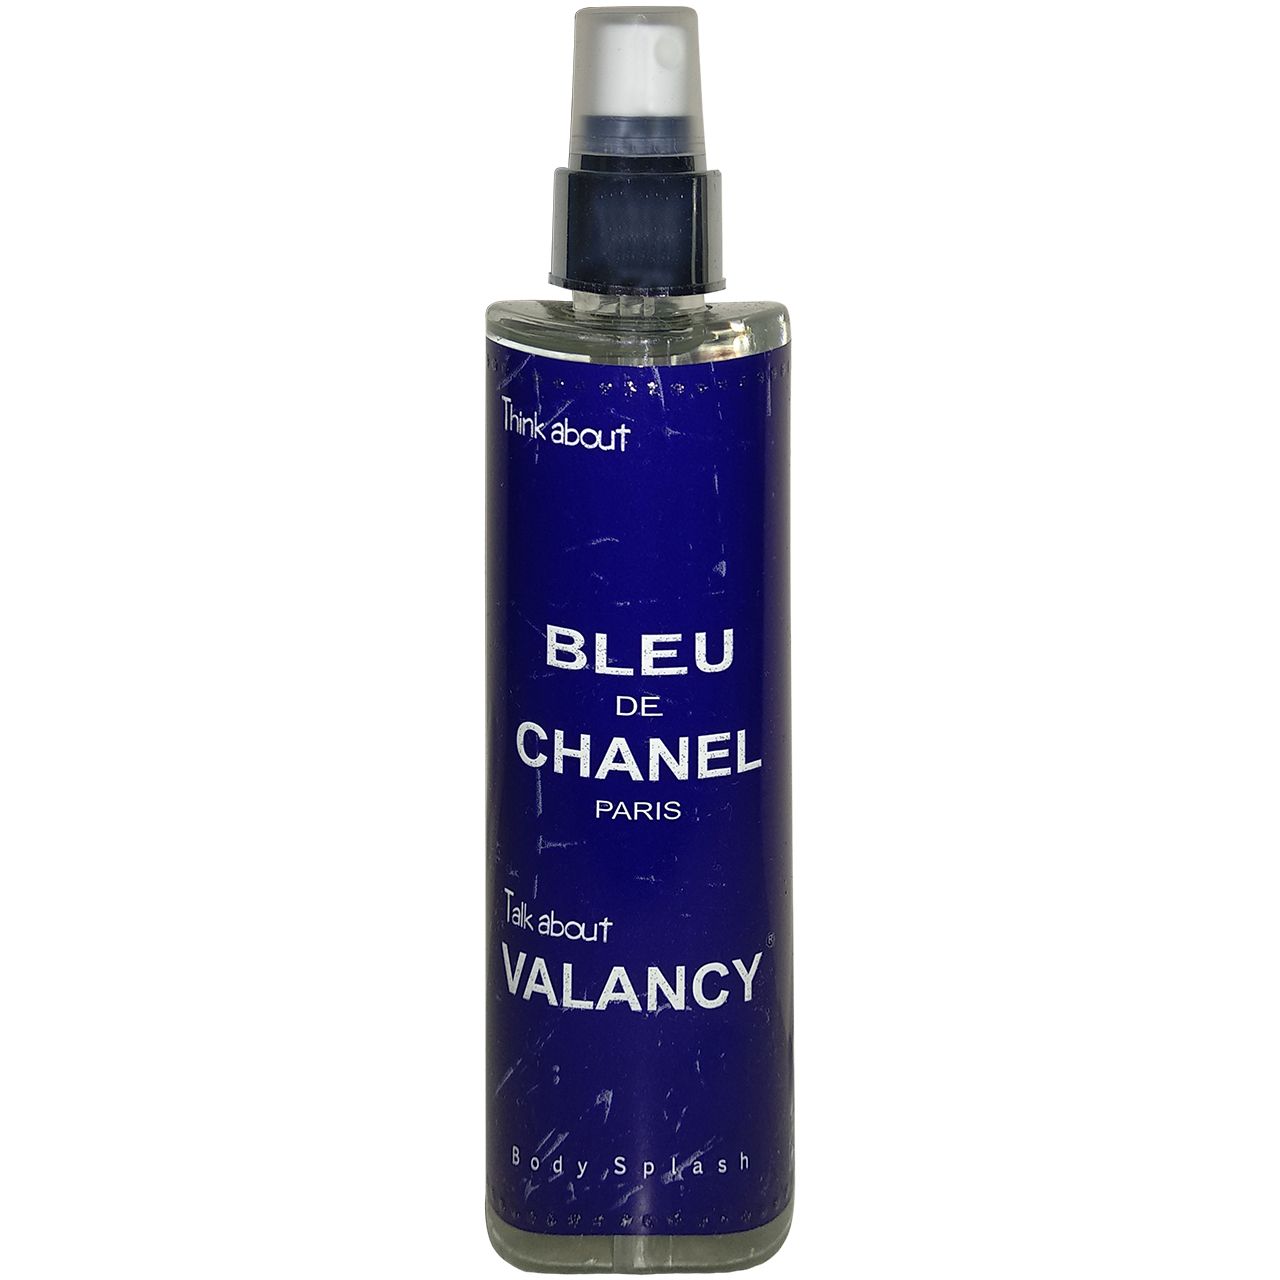 بادی اسپلش مردانه والانسی مدل Bleu De Chanel حجم 200 میلی لیتر -  - 1